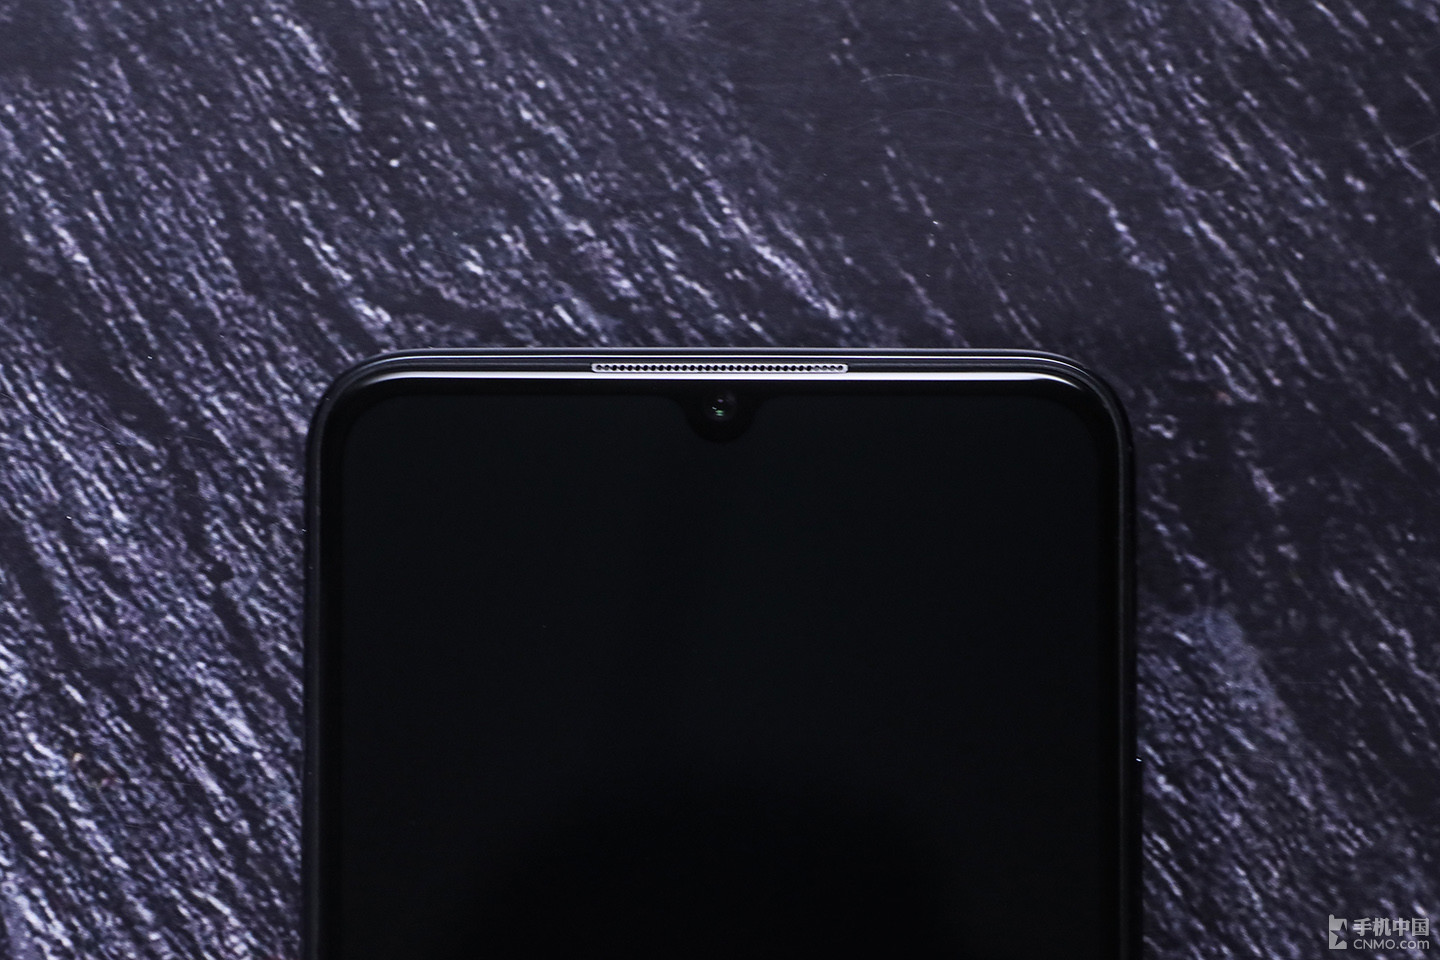 Vivo ra mắt gaming phone  IQOO Neo cấu hình
khủng, giá rẻ: Snapdragon 845, RAM từ 6GB, pin 4500mAh, sạc
nhanh 22.5W